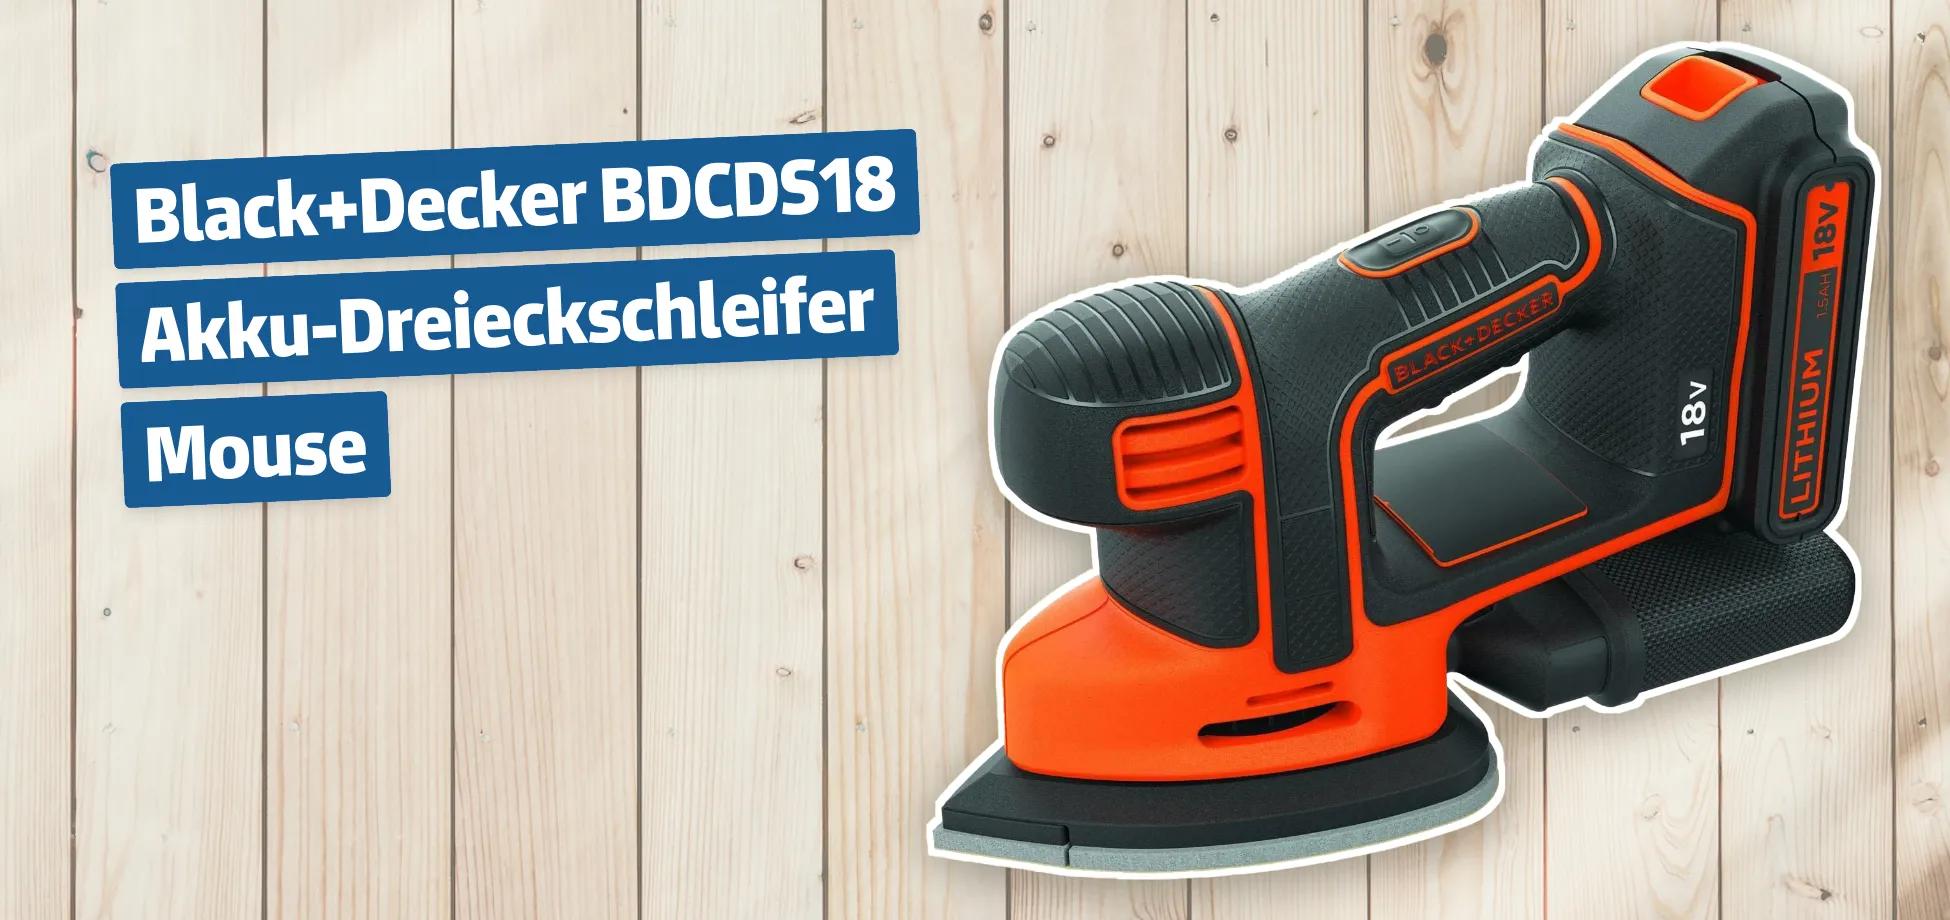 Black+Decker BDCDS18 Akku-Dreieckschleifer Mouse